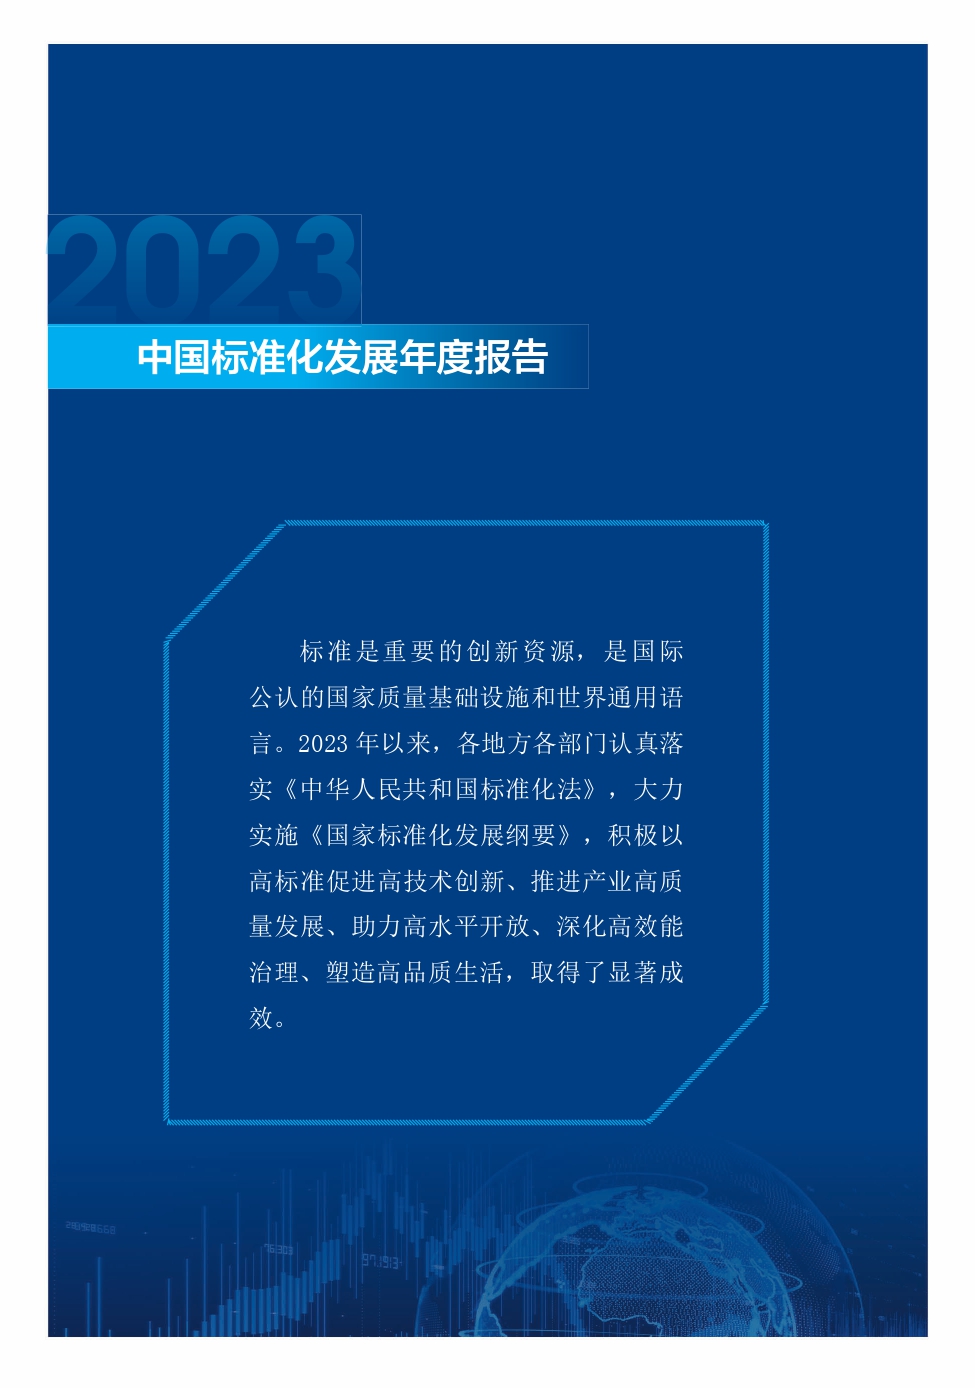 《中国标准化发展年度报告（2023年）》_page-0005.jpg